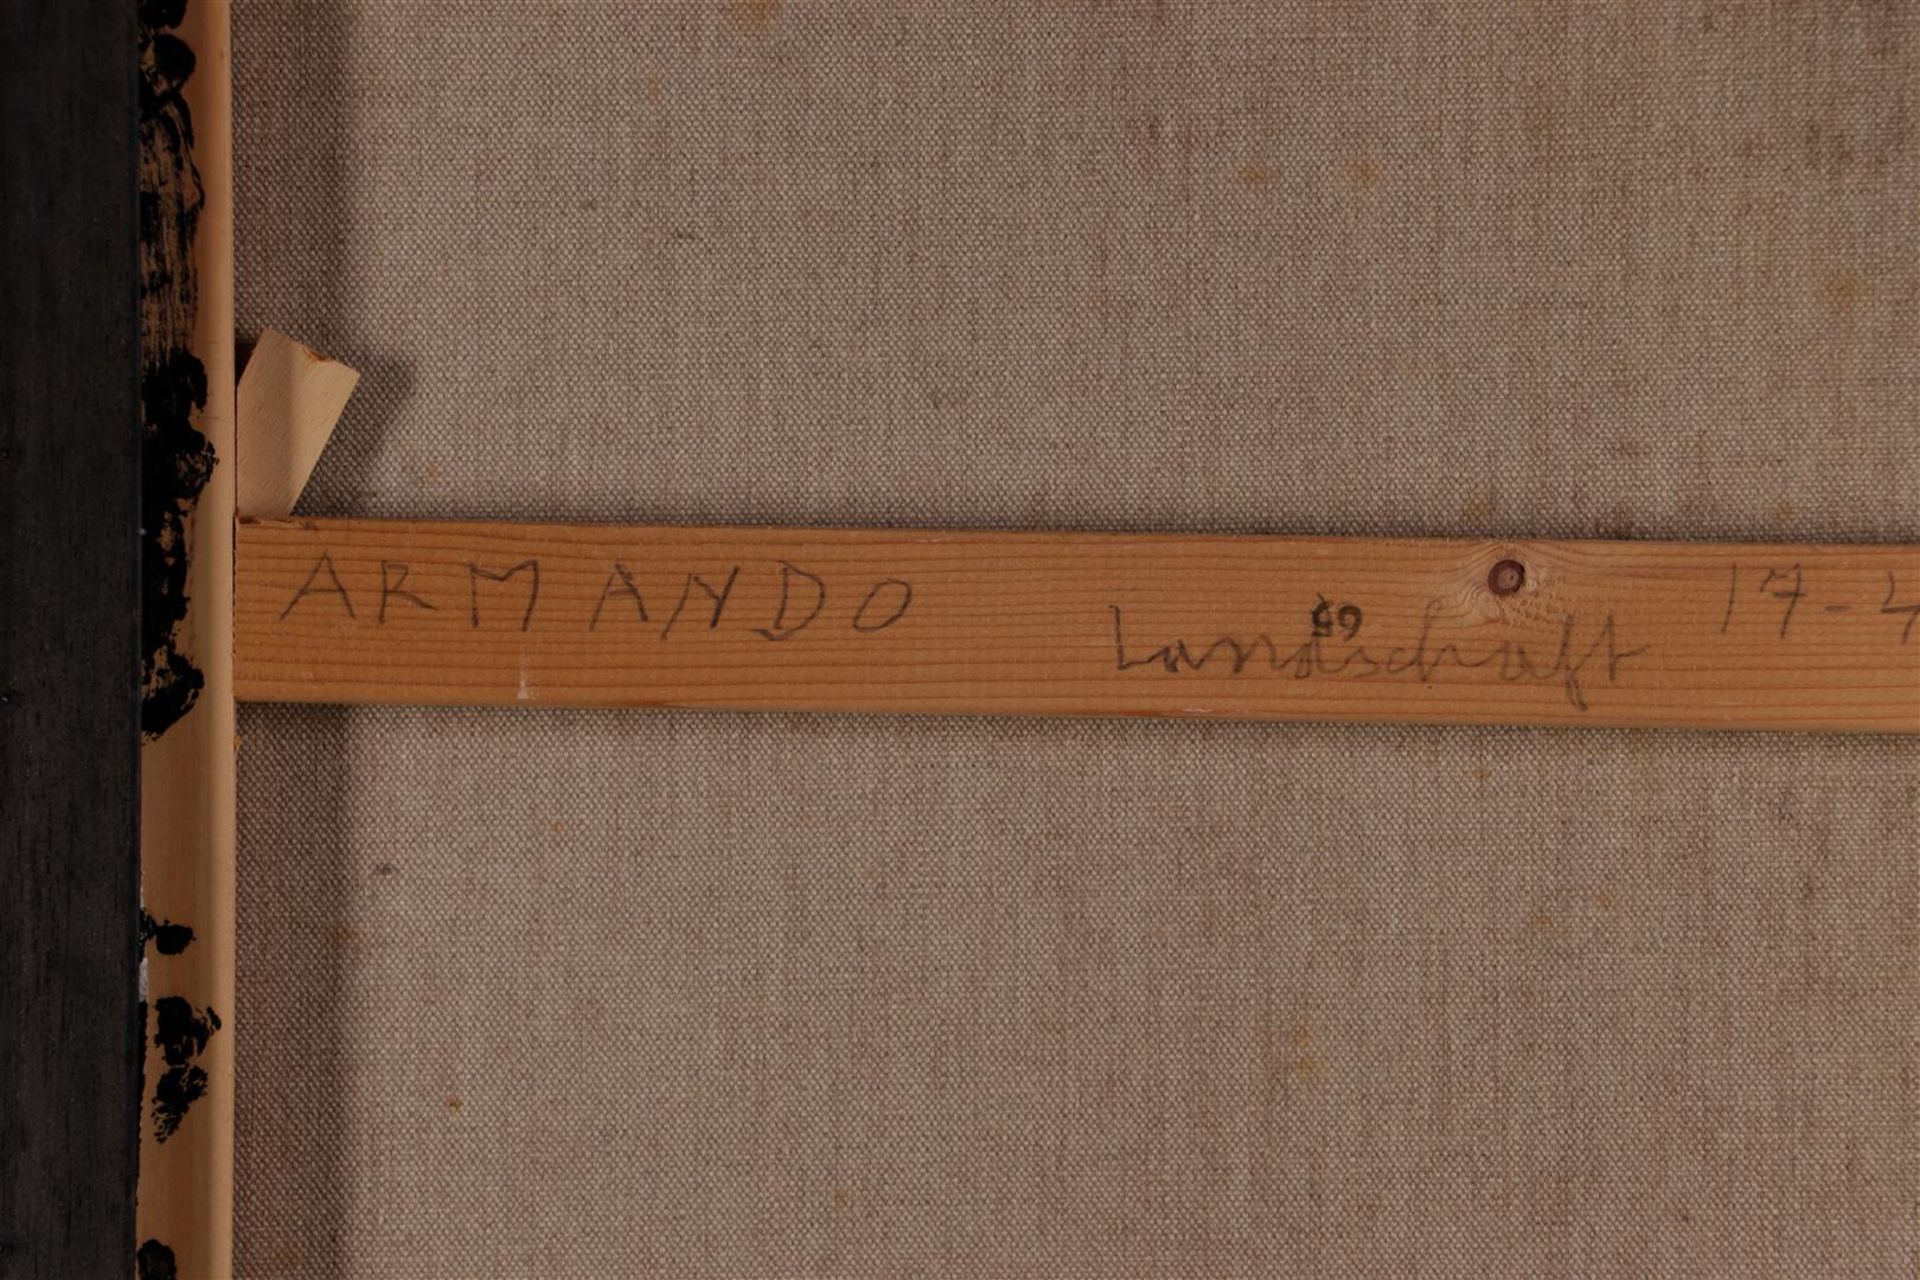 Armando - Herman Dirk van Dodeweerd (Amsterdam 1929 - 2018 Potsdam), Landschaft, signed, and annotat - Image 4 of 4